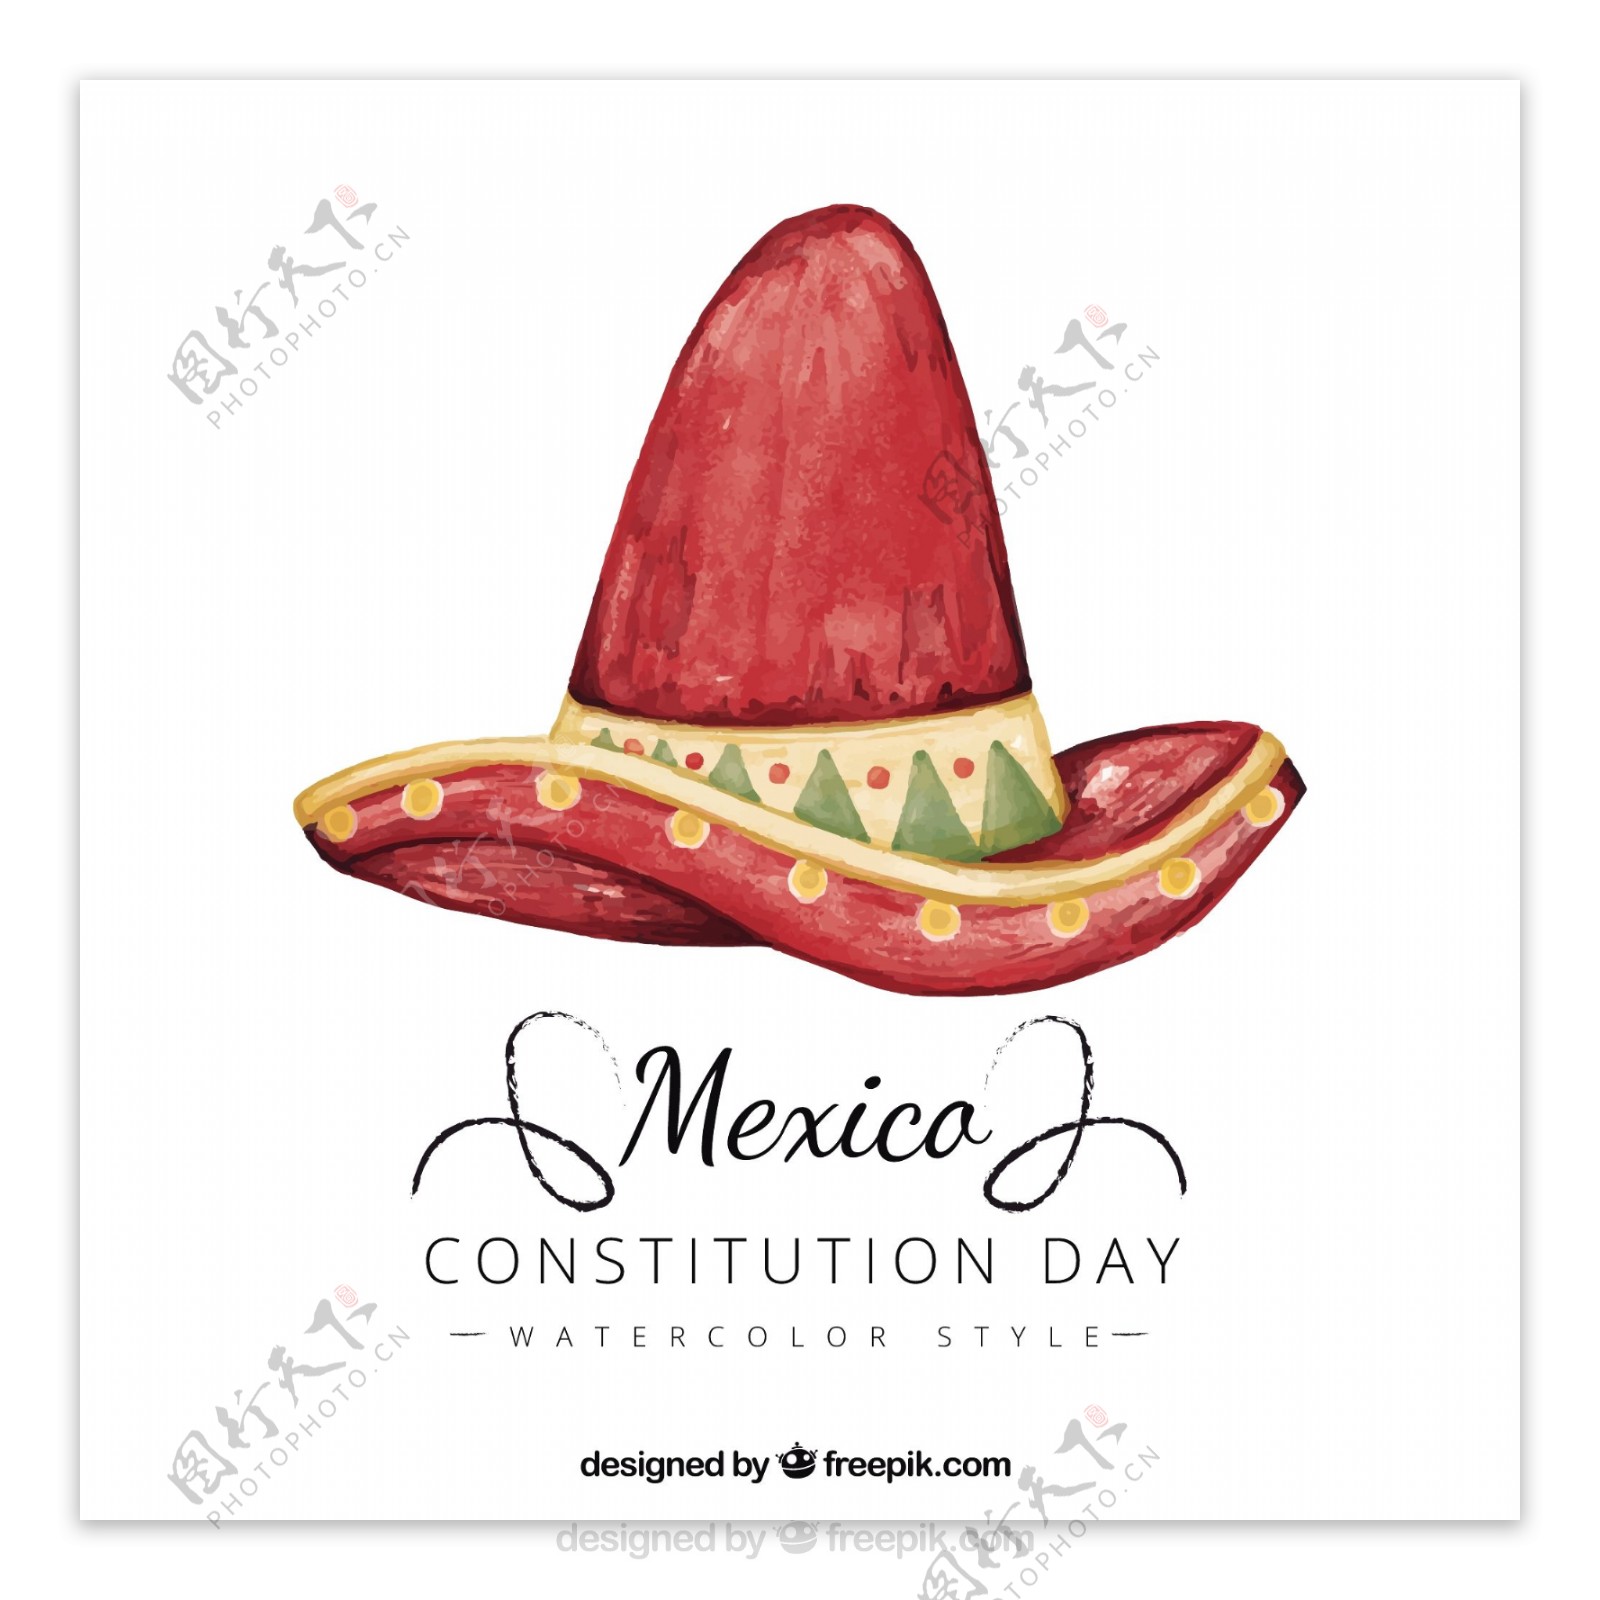 宪法日背景与墨西哥水彩帽子